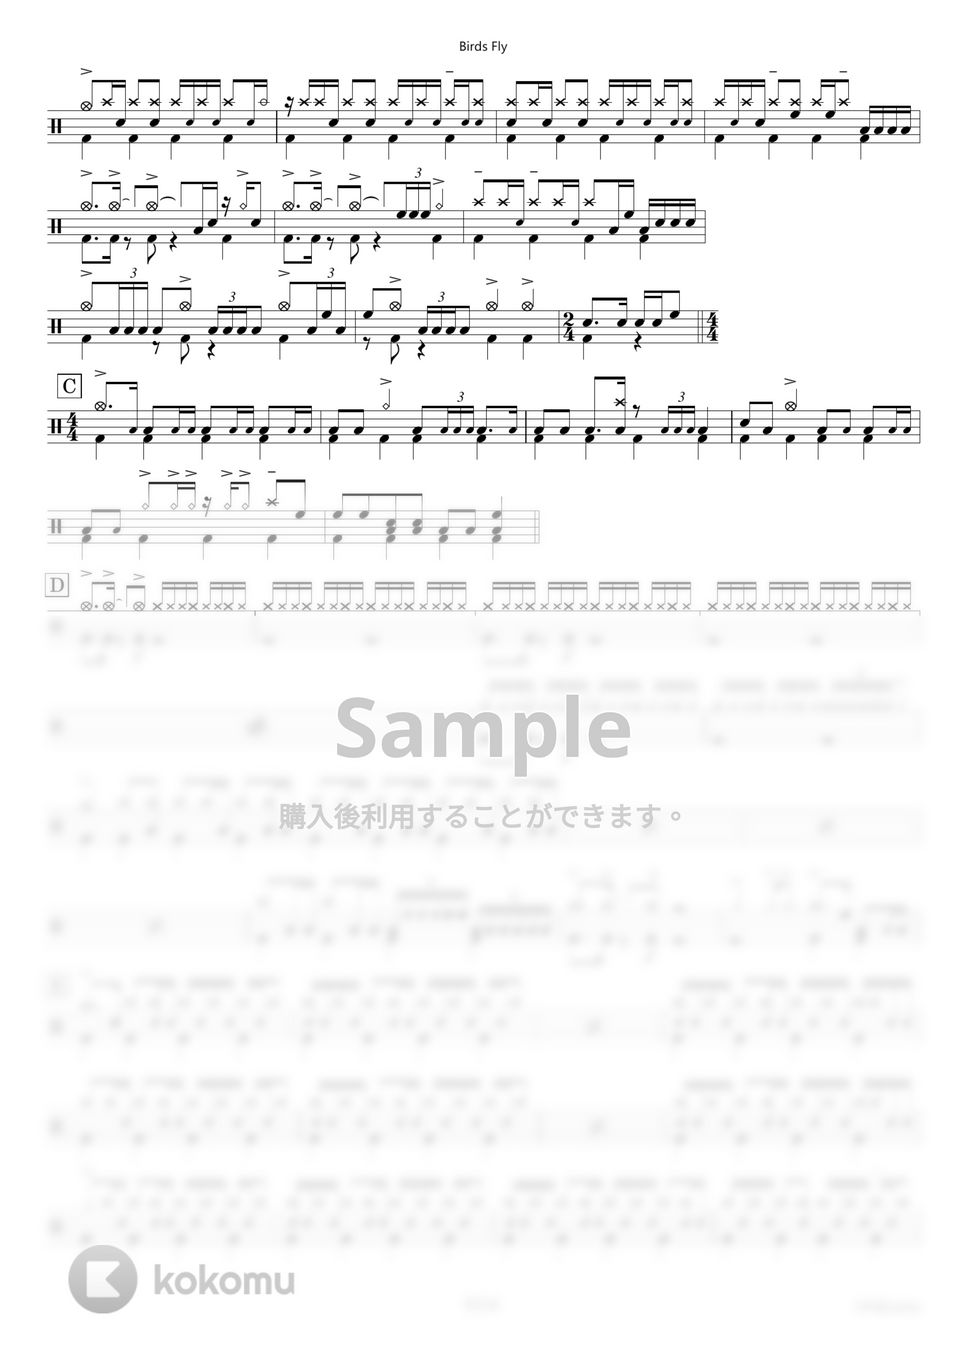 H ZETTRIO - Birds Fly 【ドラム楽譜〔完コピ〕】.pdf by HYdrums